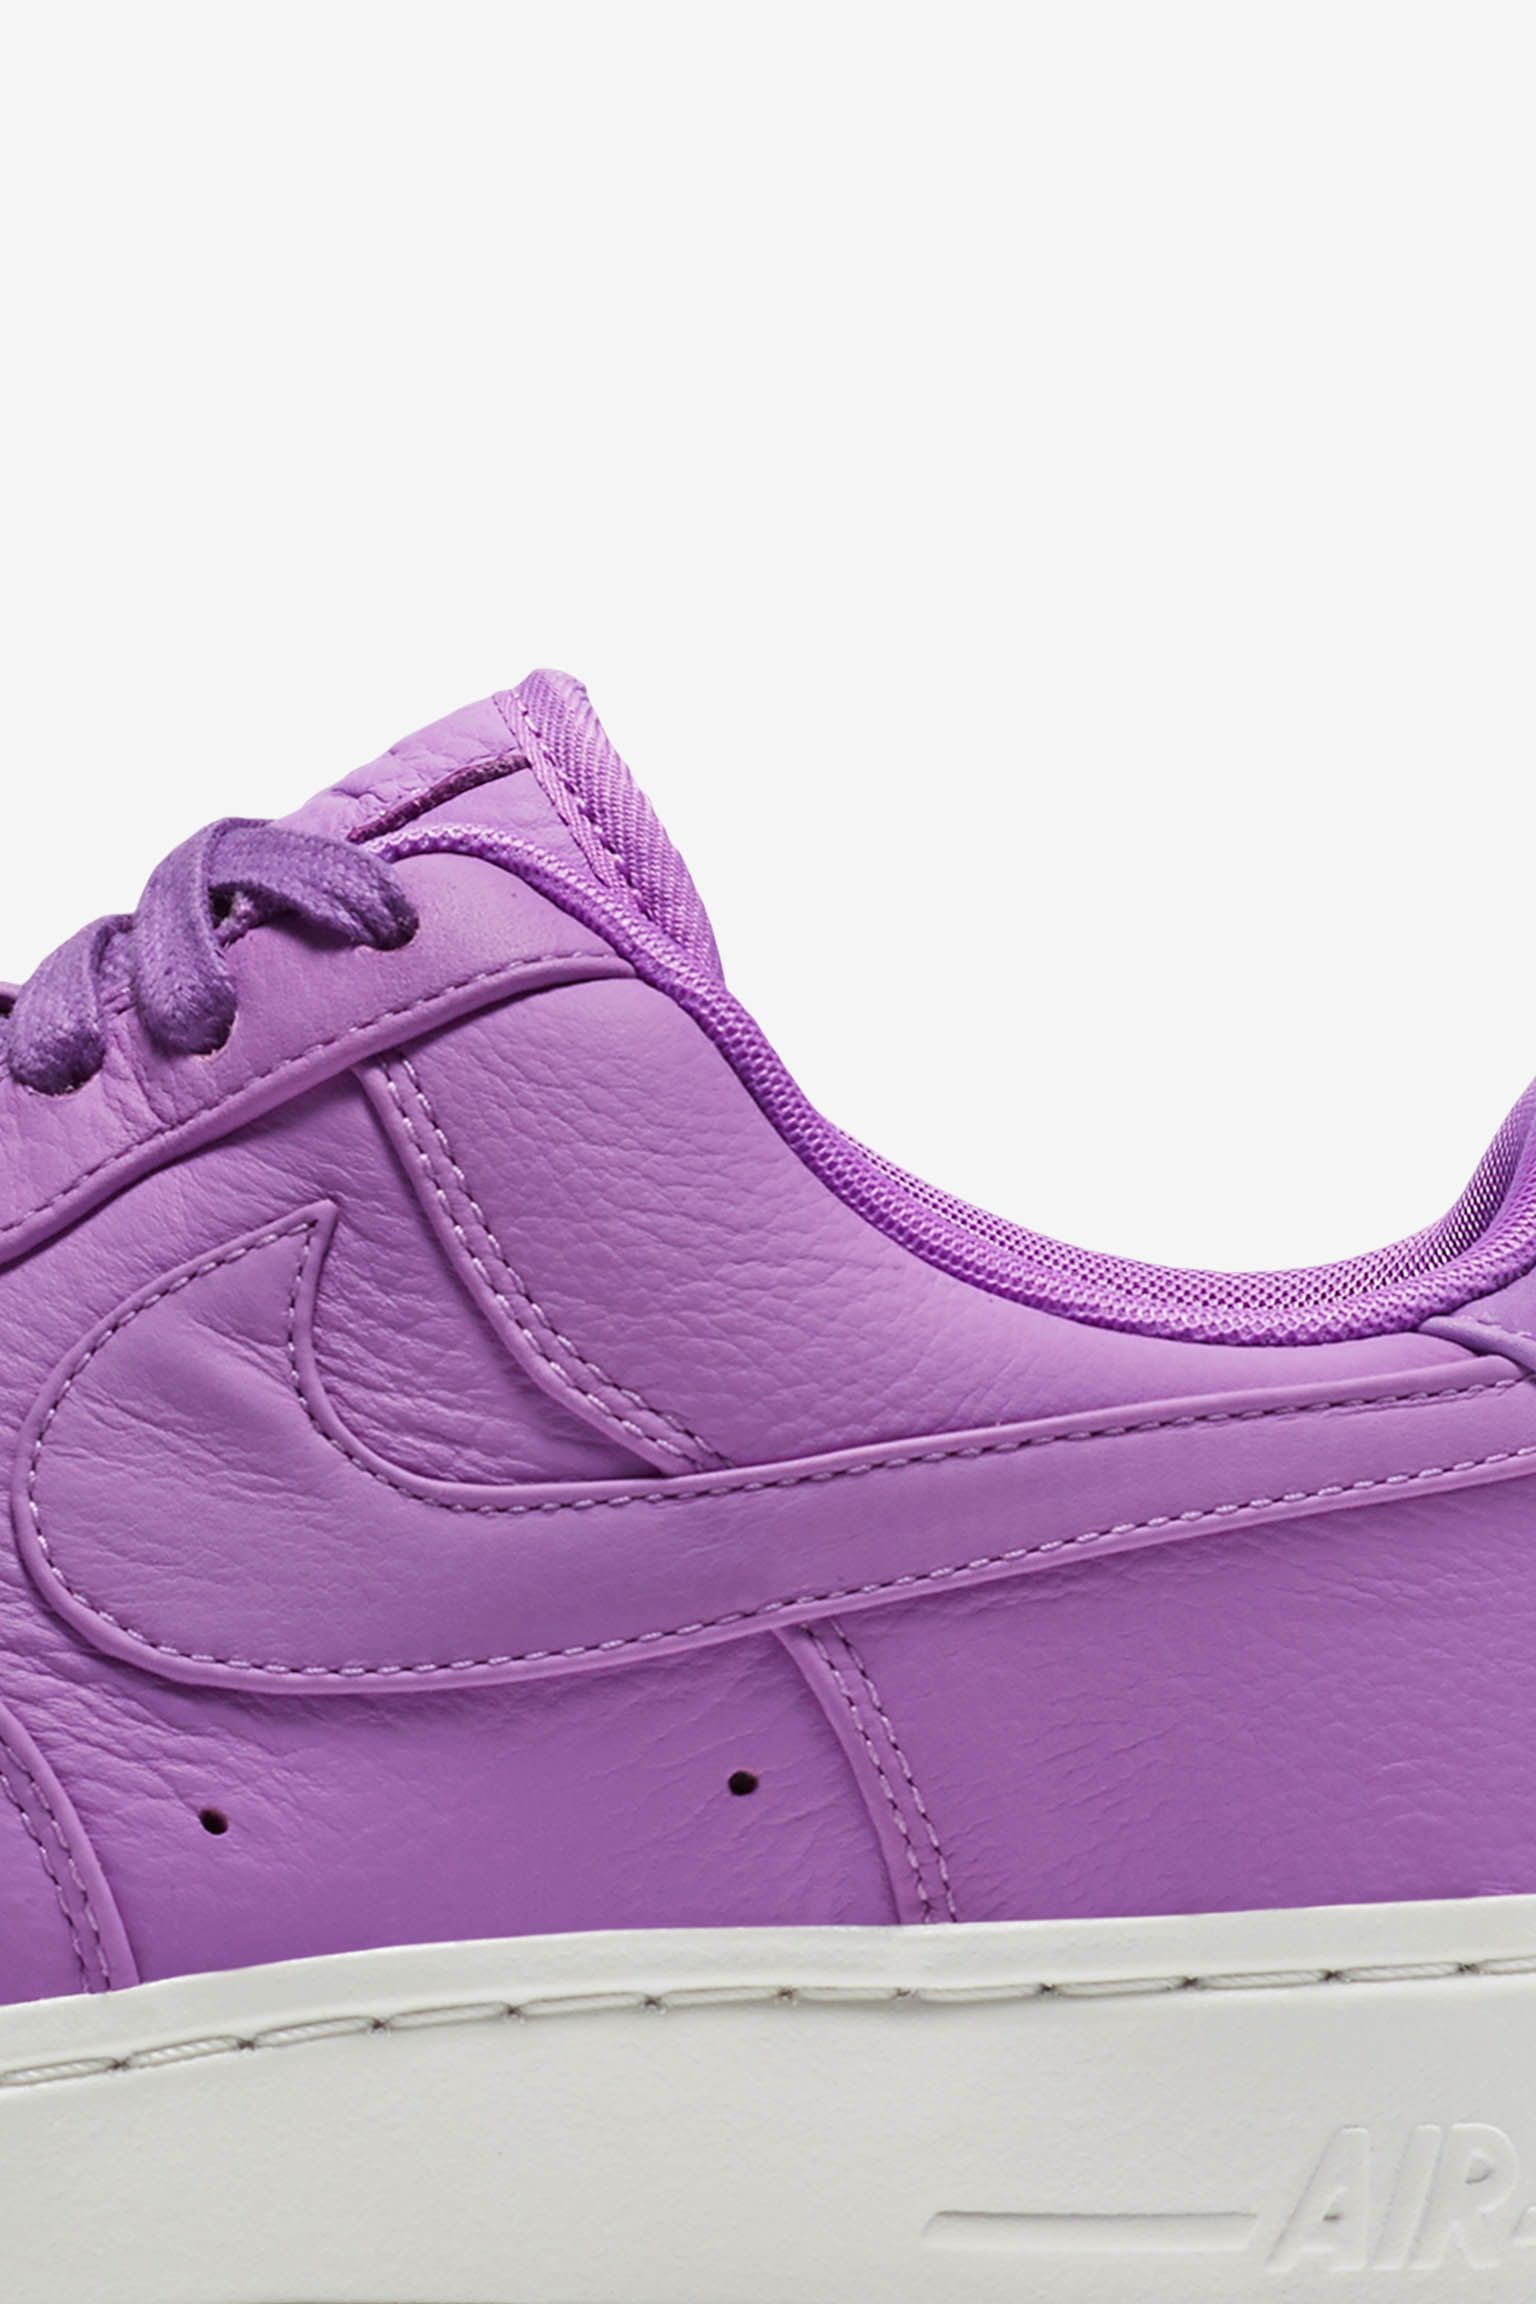 ナイキラボ エア フォース 1 LOW 'Purple Stardust'. Nike SNKRS JP